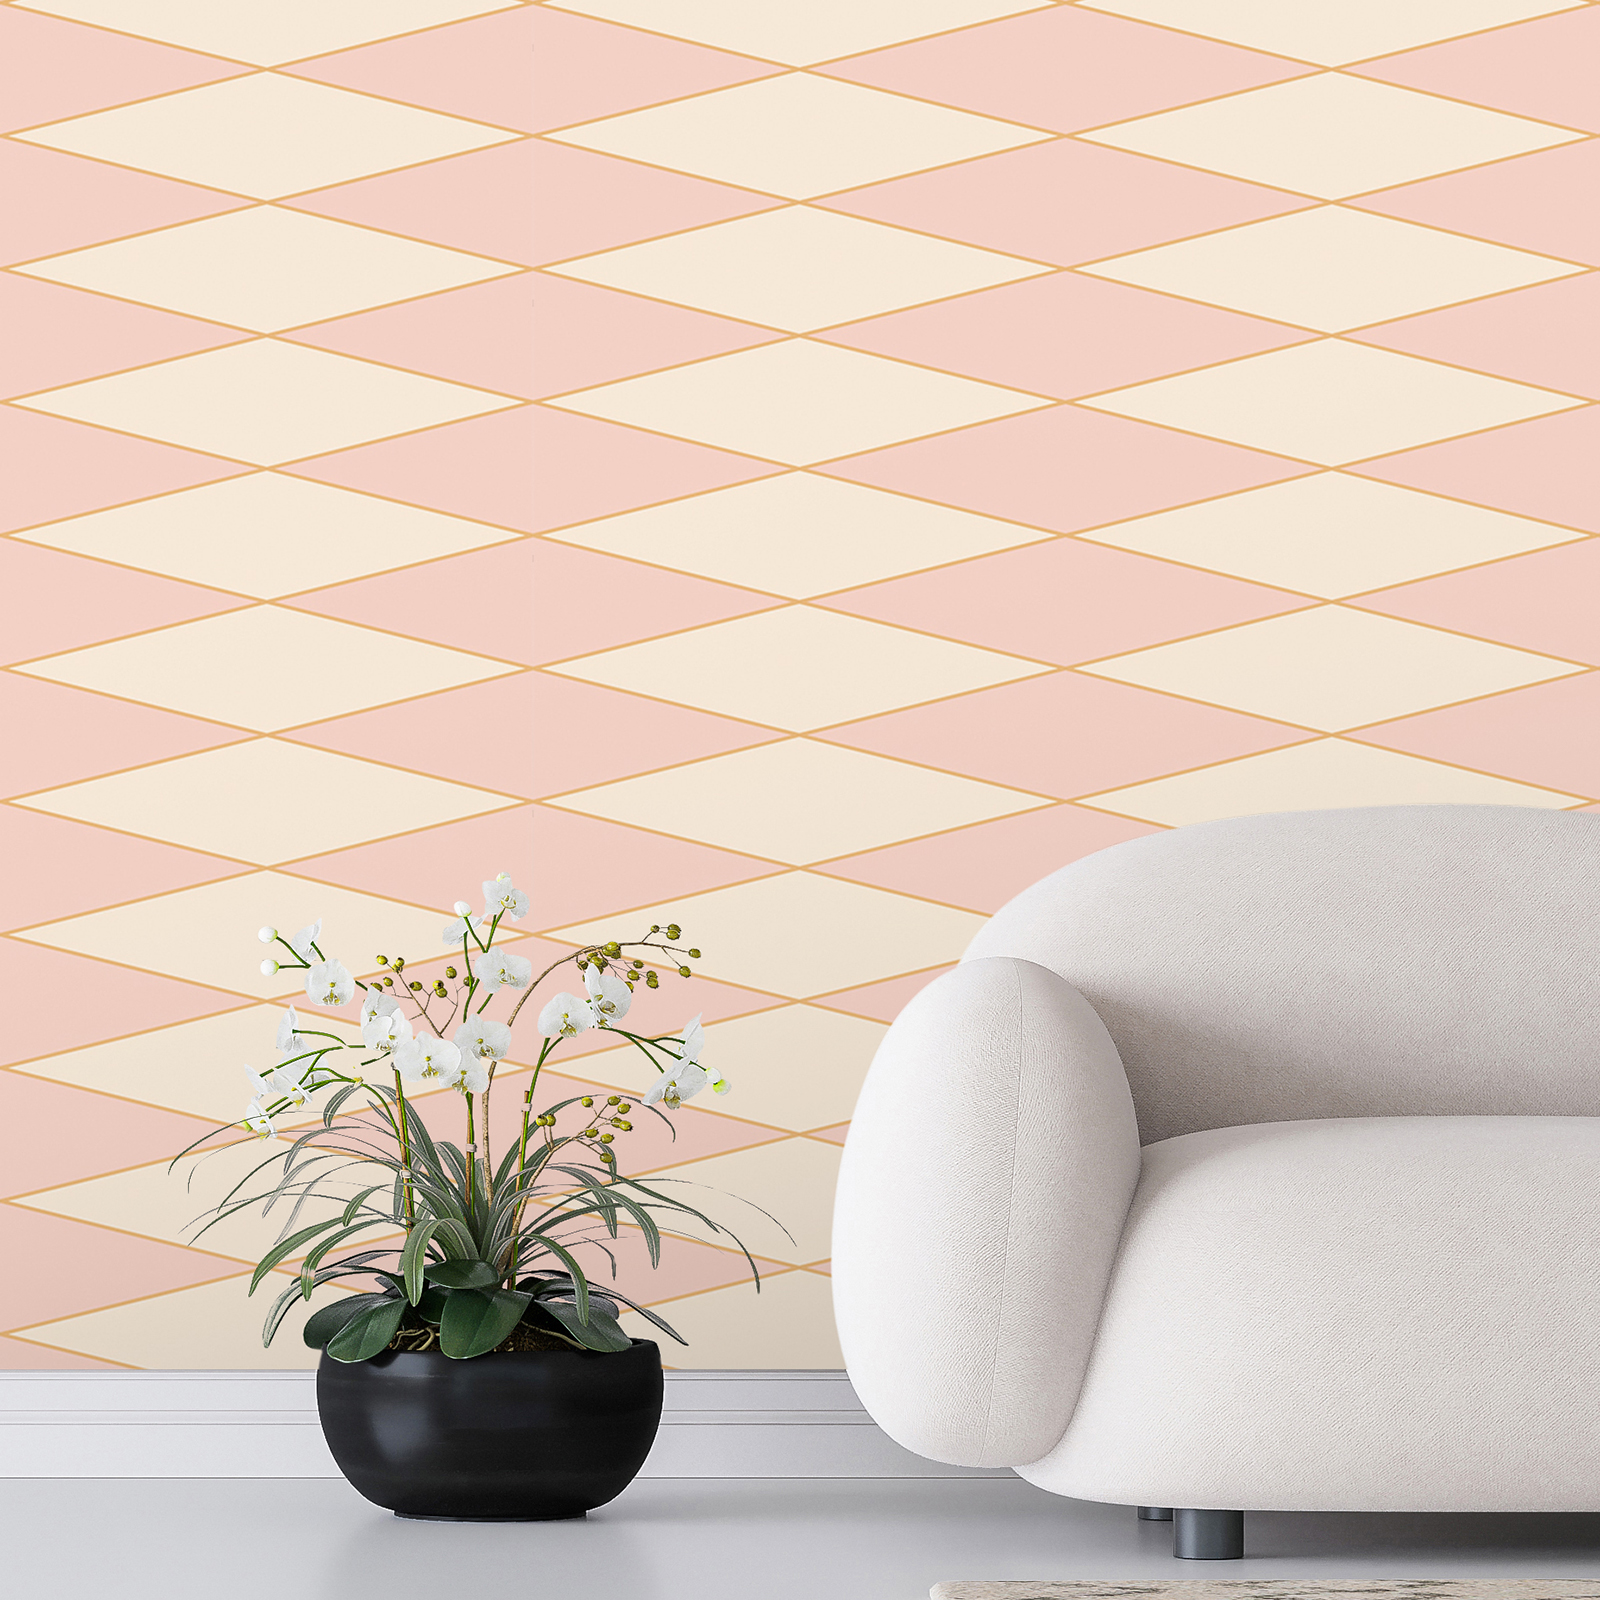 Retro 70s stijl diamant muurschildering - roze, crème, oranje | structuur non-woven
